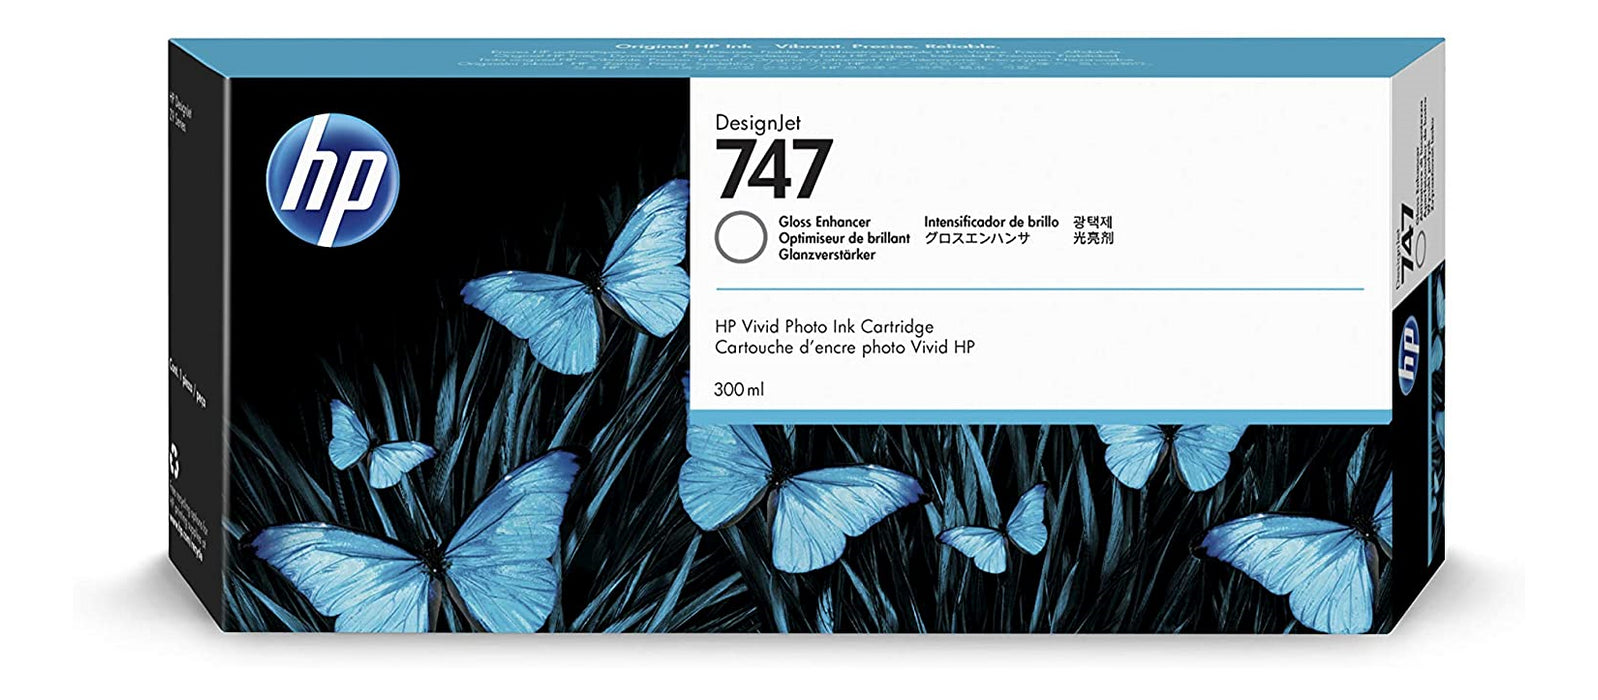 P2V87A HP #747 300 ml Gloss Enhancer Ink Crtg